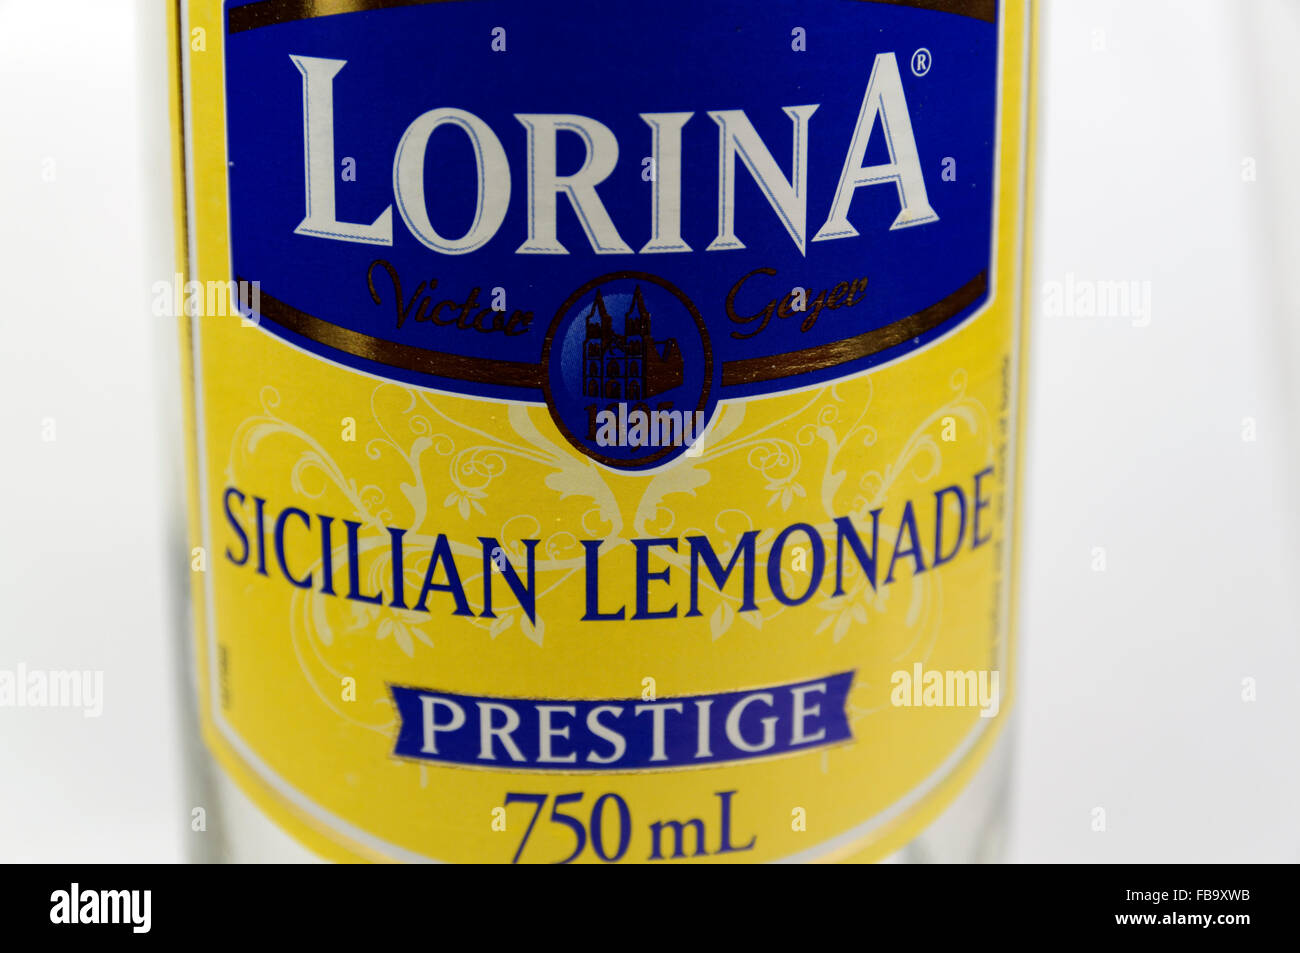 Lorina marca limonata siciliana. Foto Stock